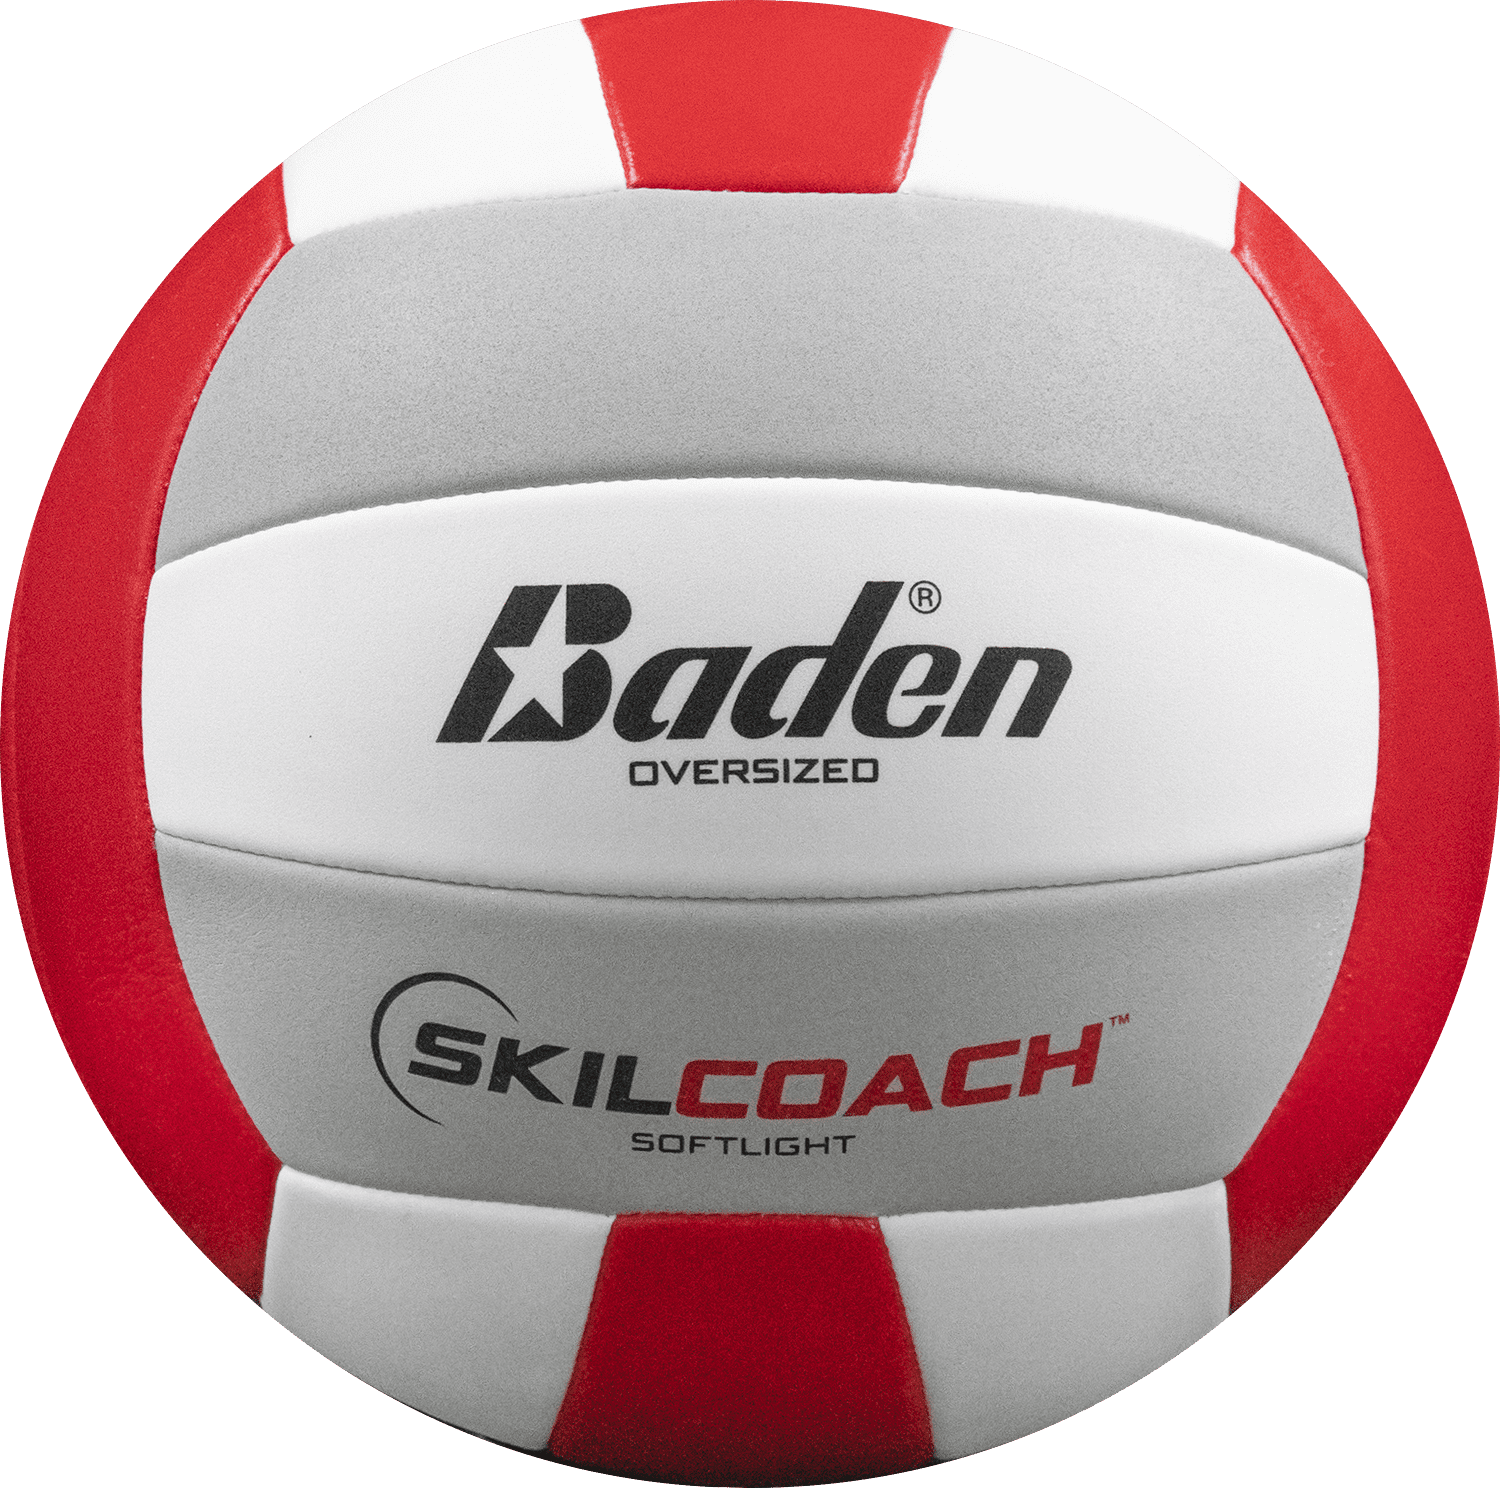 Wilson Gioco Super Soft-Ballon di Beach Volley